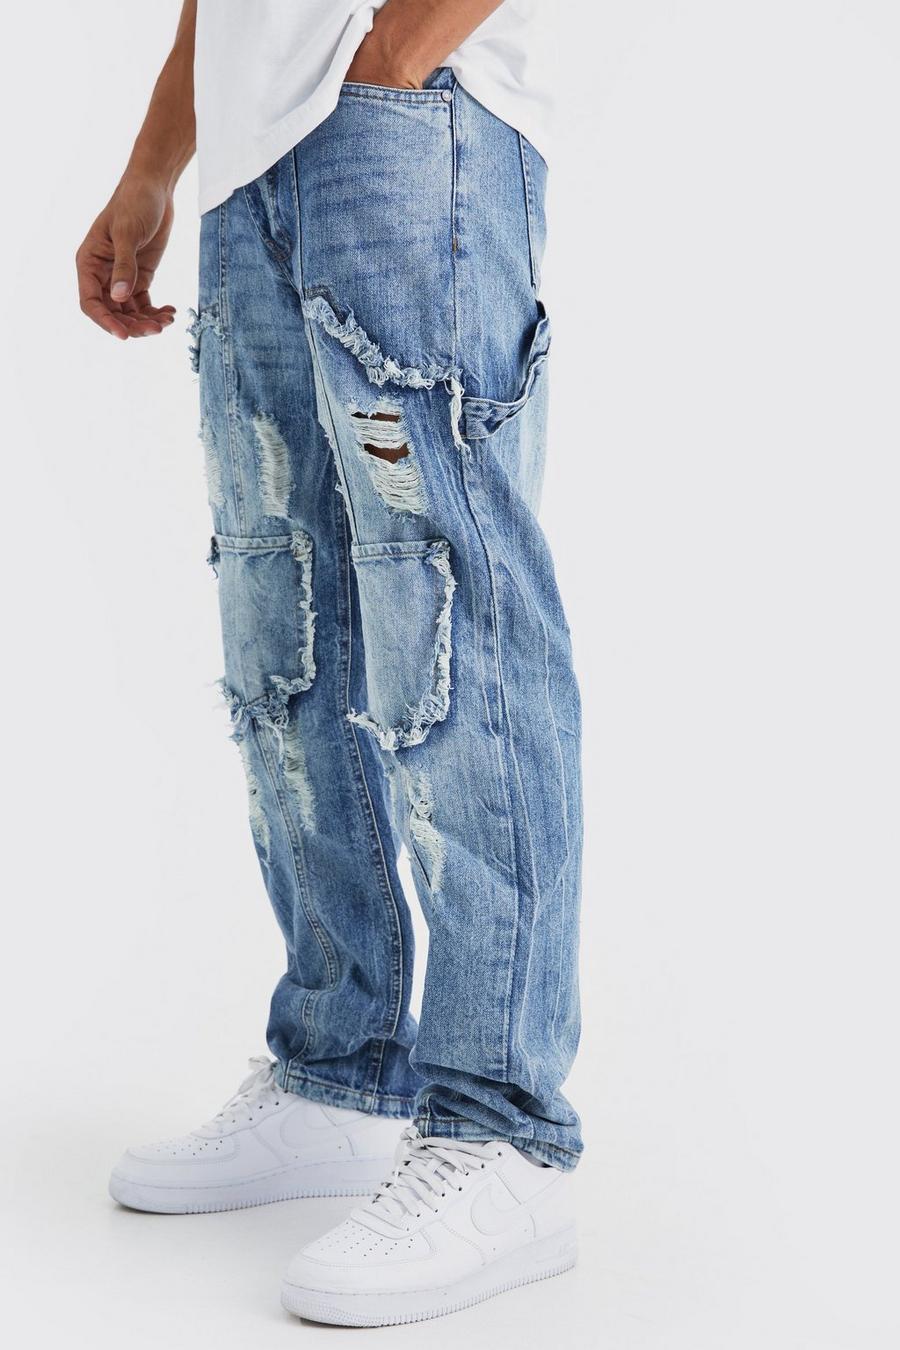 Lockere Cargo-Jeans mit Rissen, Antique blue